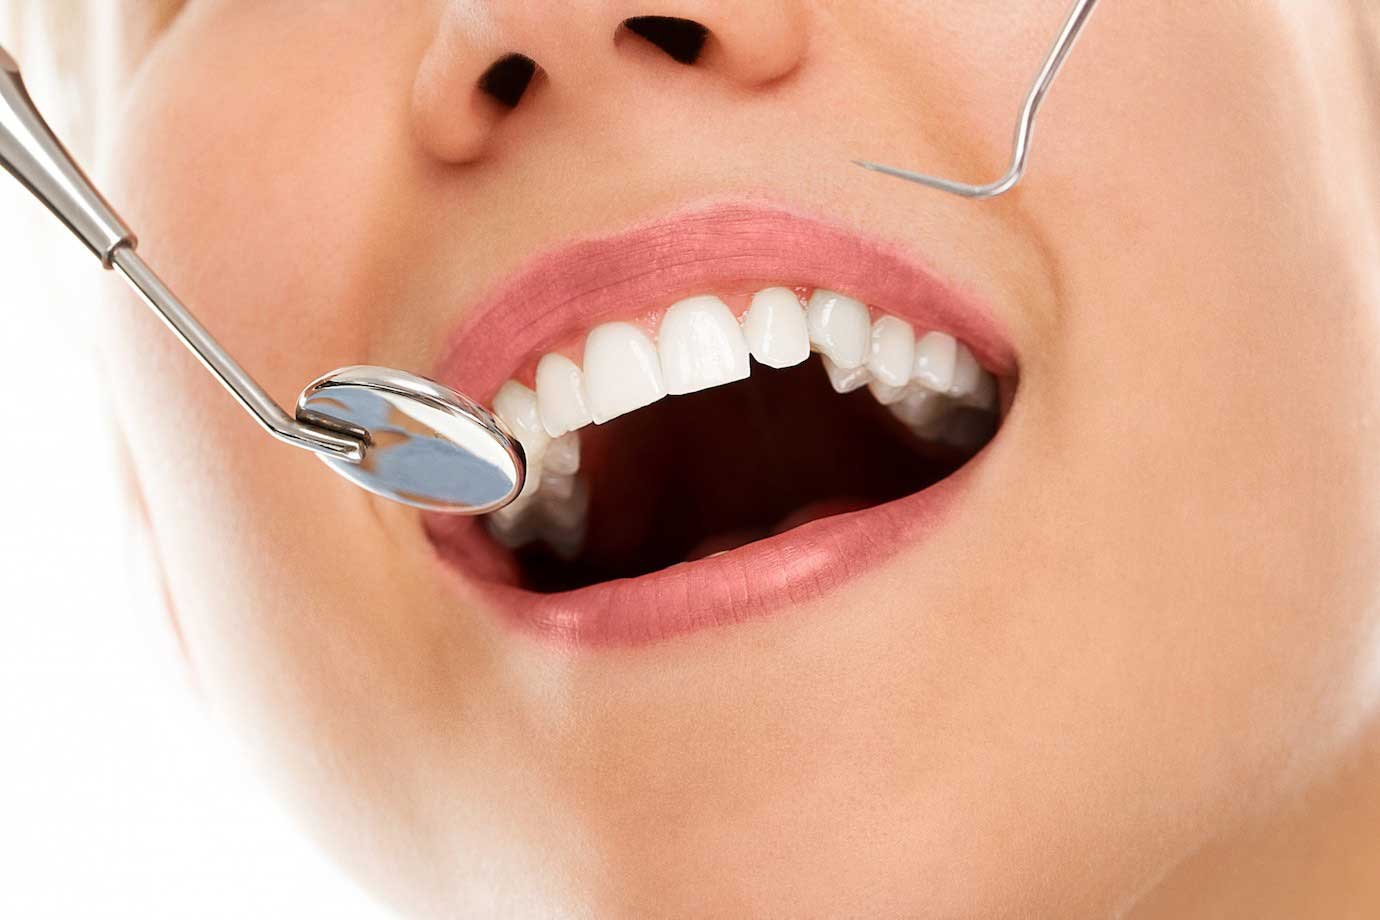 רופא שיניים פרטי בגבעת שמואל – האם זה כדאי?